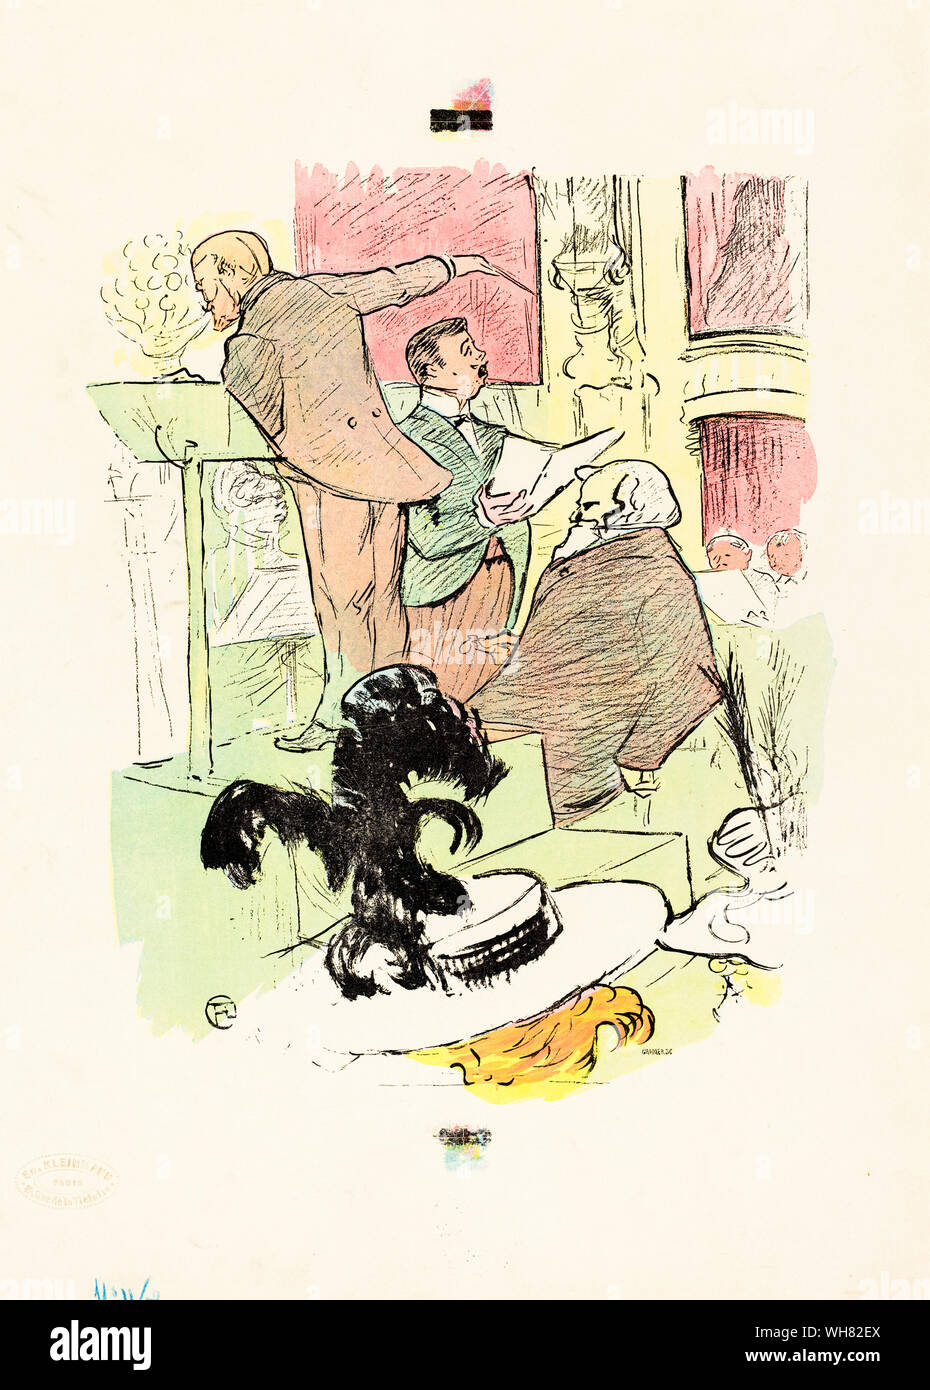 Henri de Toulouse Lautrec, Les grands concerts de l'opera, print, 1895 Stock Photo